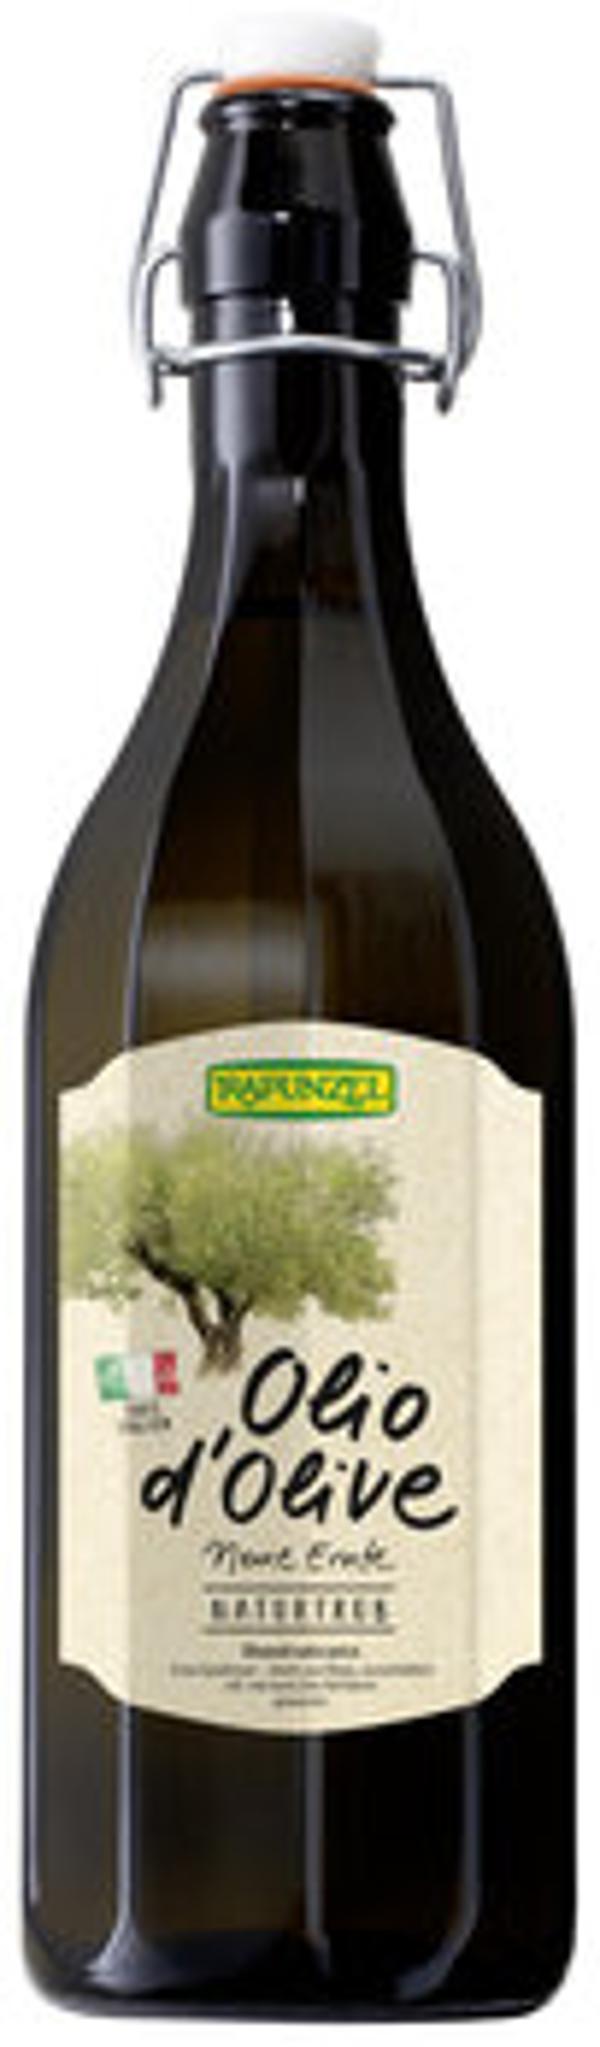 Produktfoto zu Olio d'Olive naturtrübes Olivenöl, 0,75 l